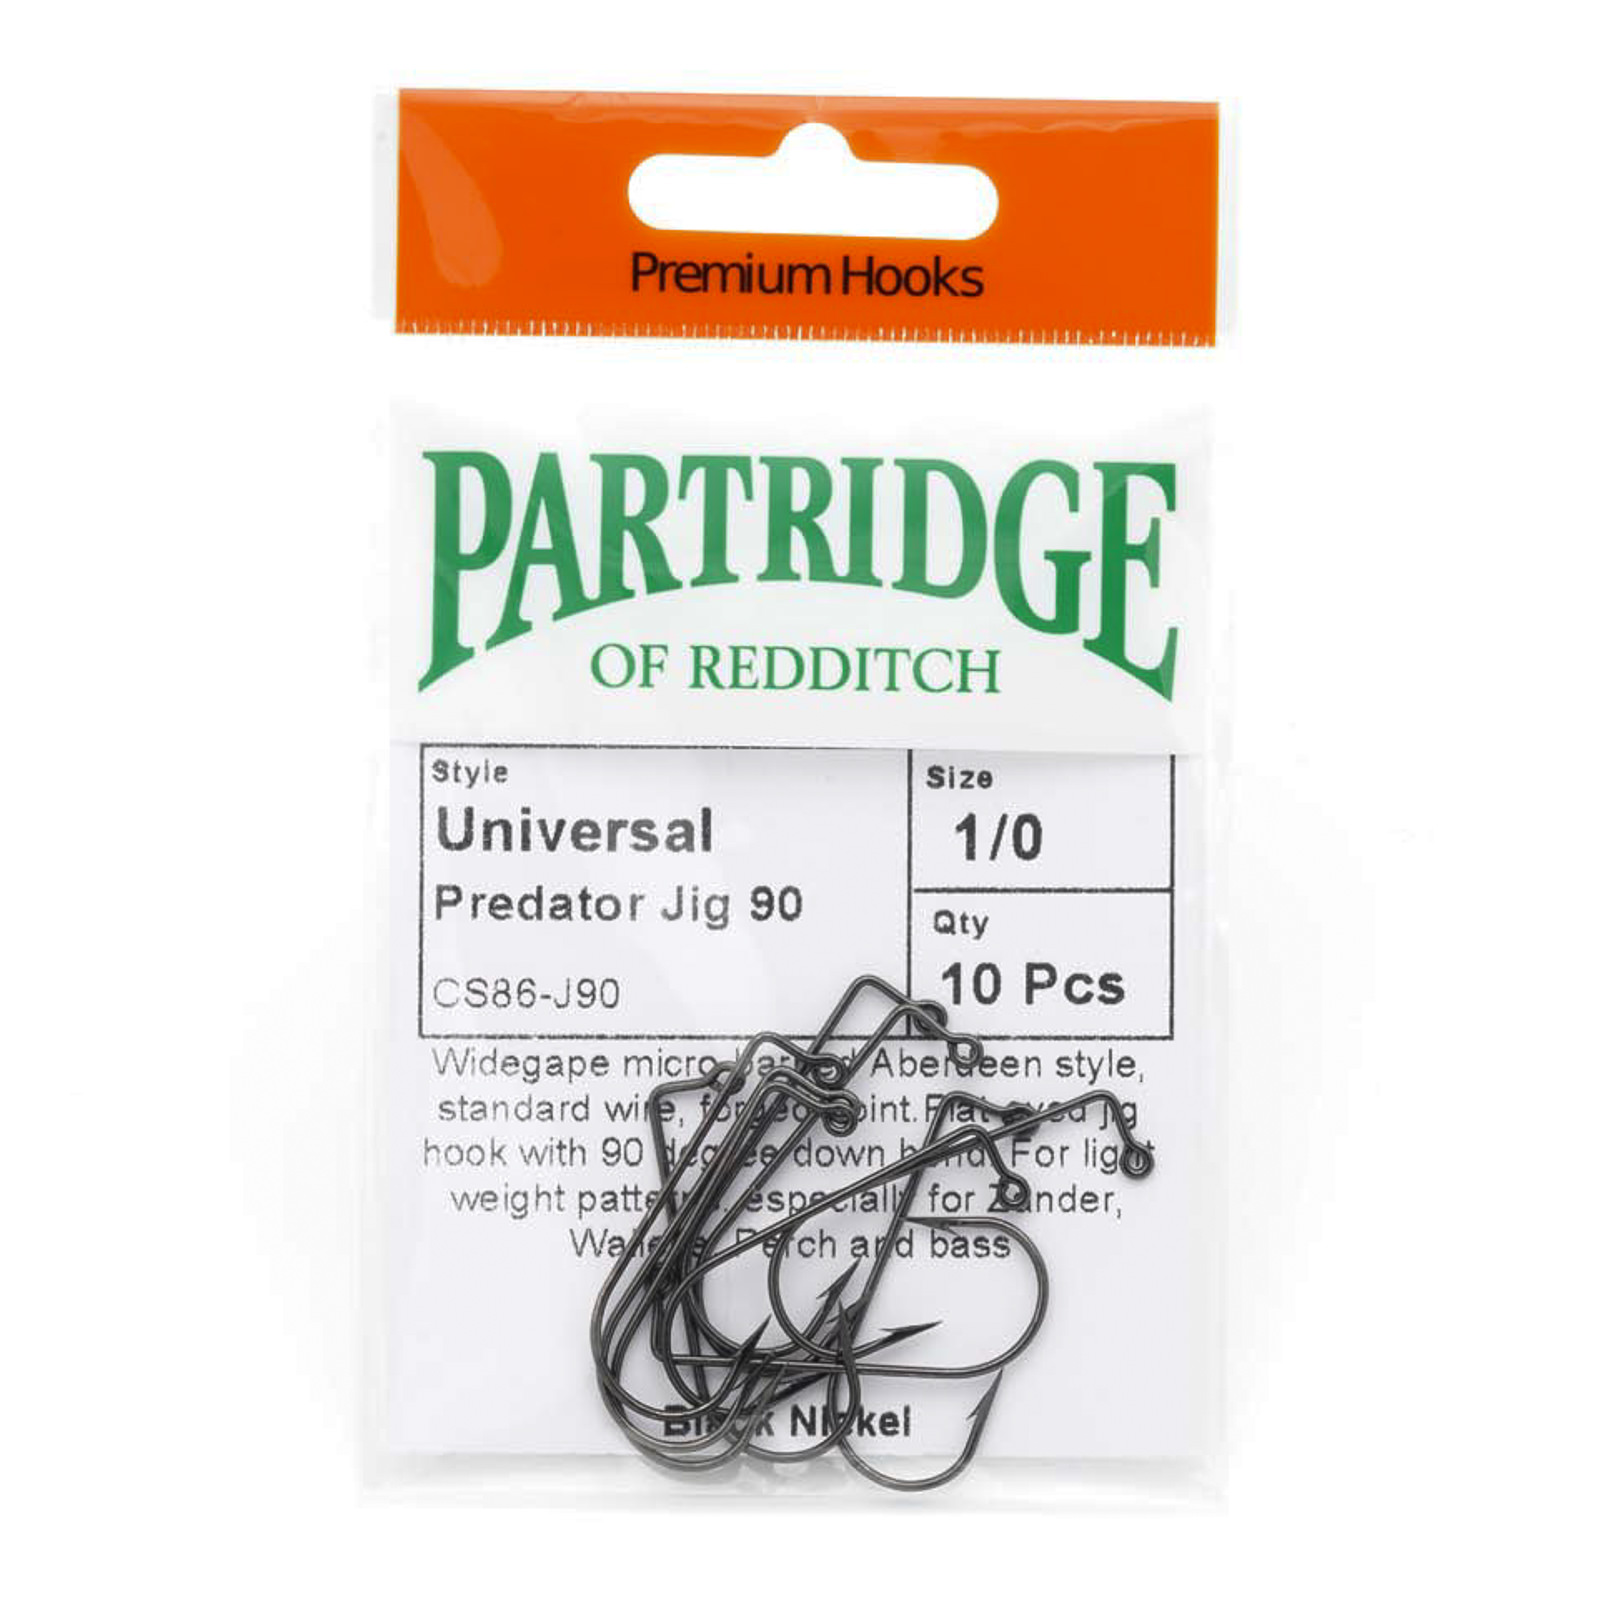 Partridge Universal Predator Jig 90 CS86-J90 / Sz. 1/0 / 10 ct